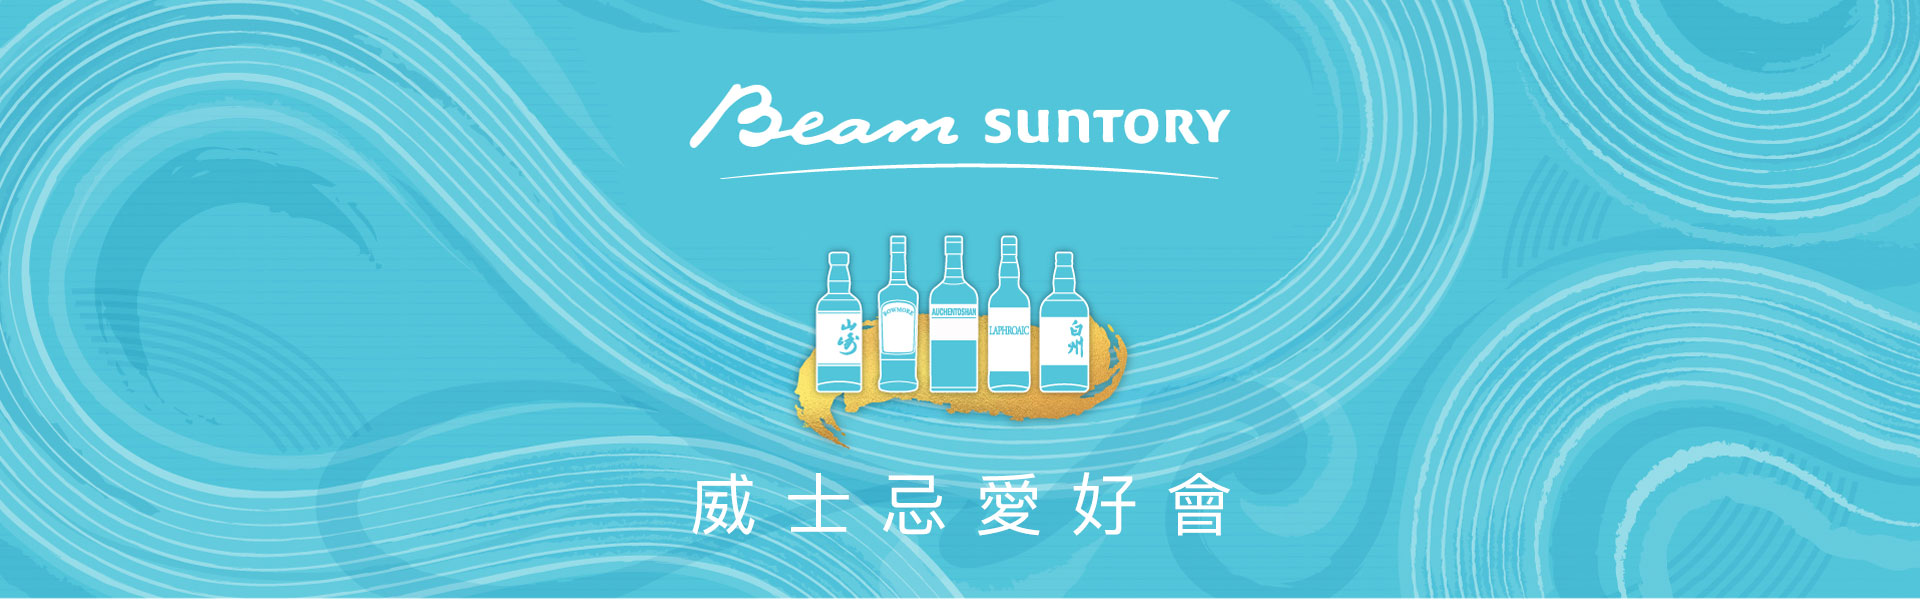 Beam Suntory威士忌愛好會集點活動辦法